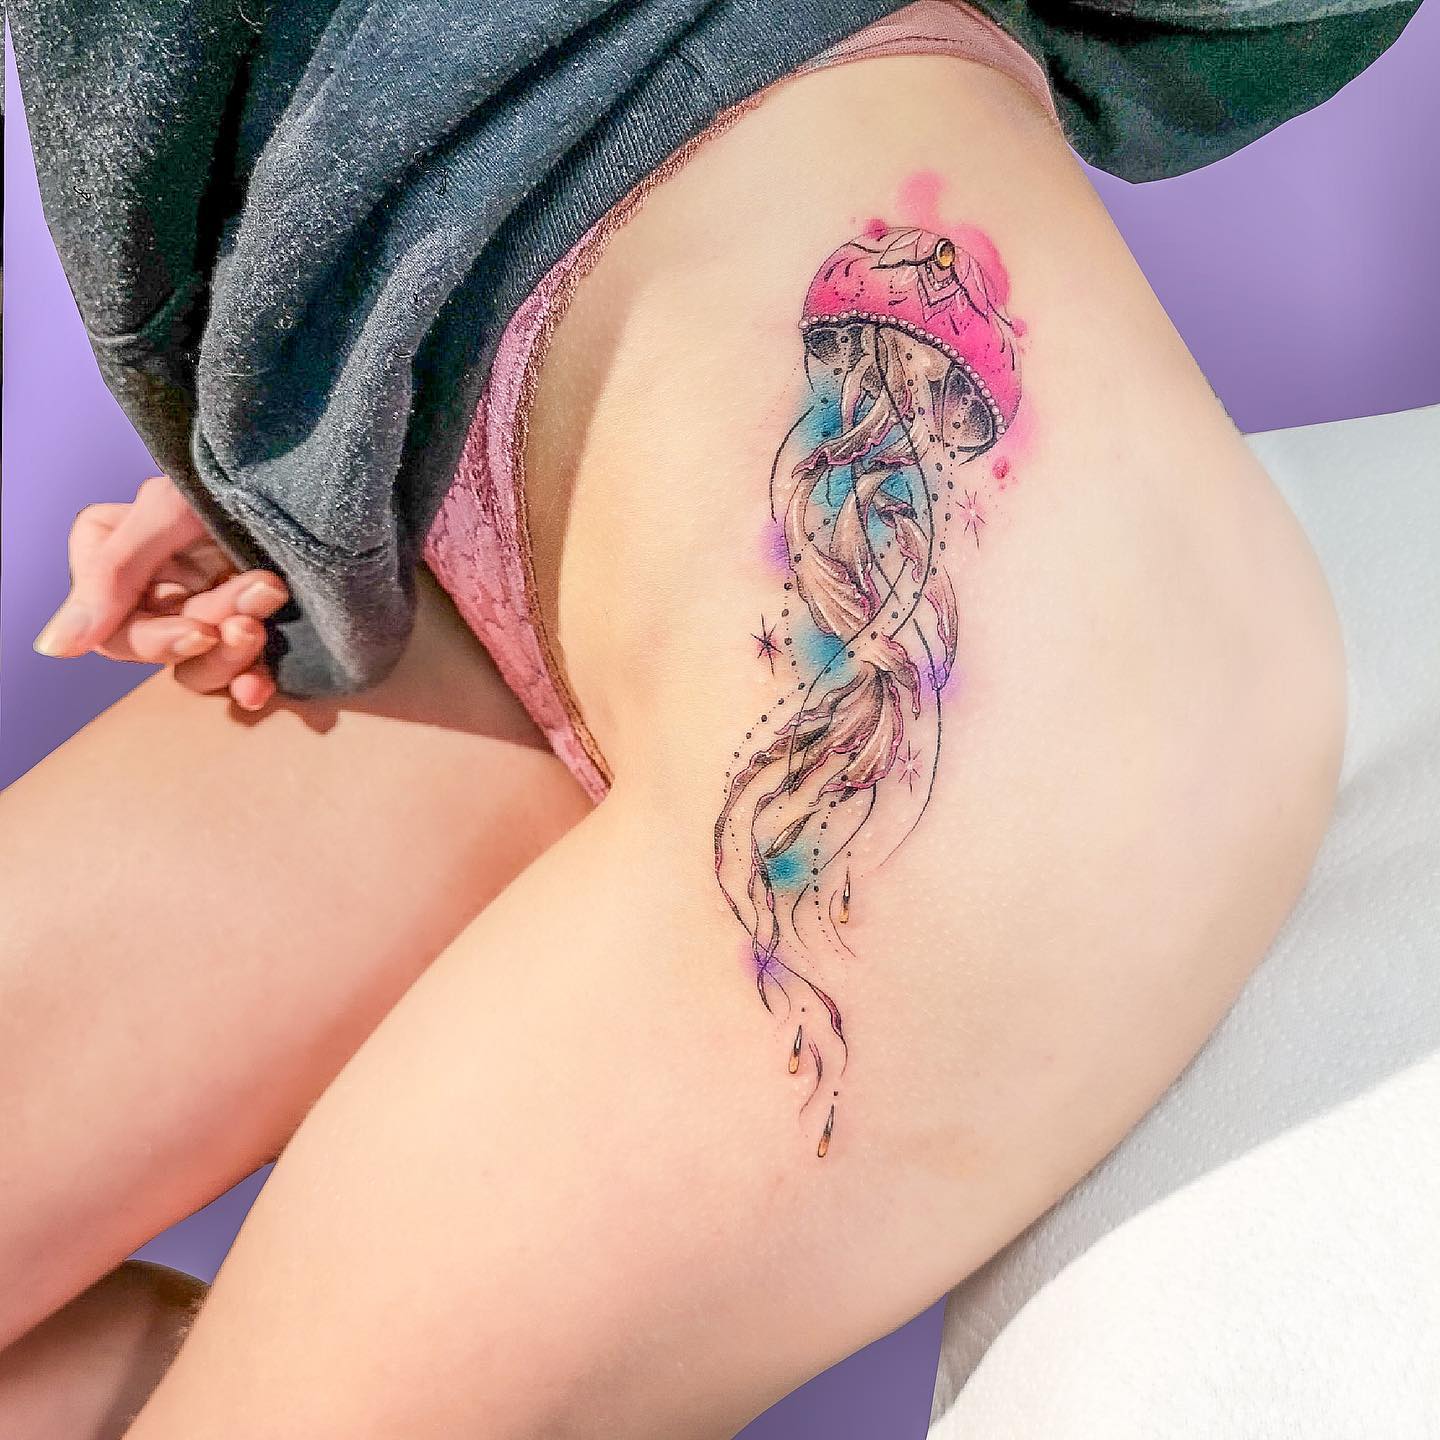 Tatuaje de cadera vibrante y colorido